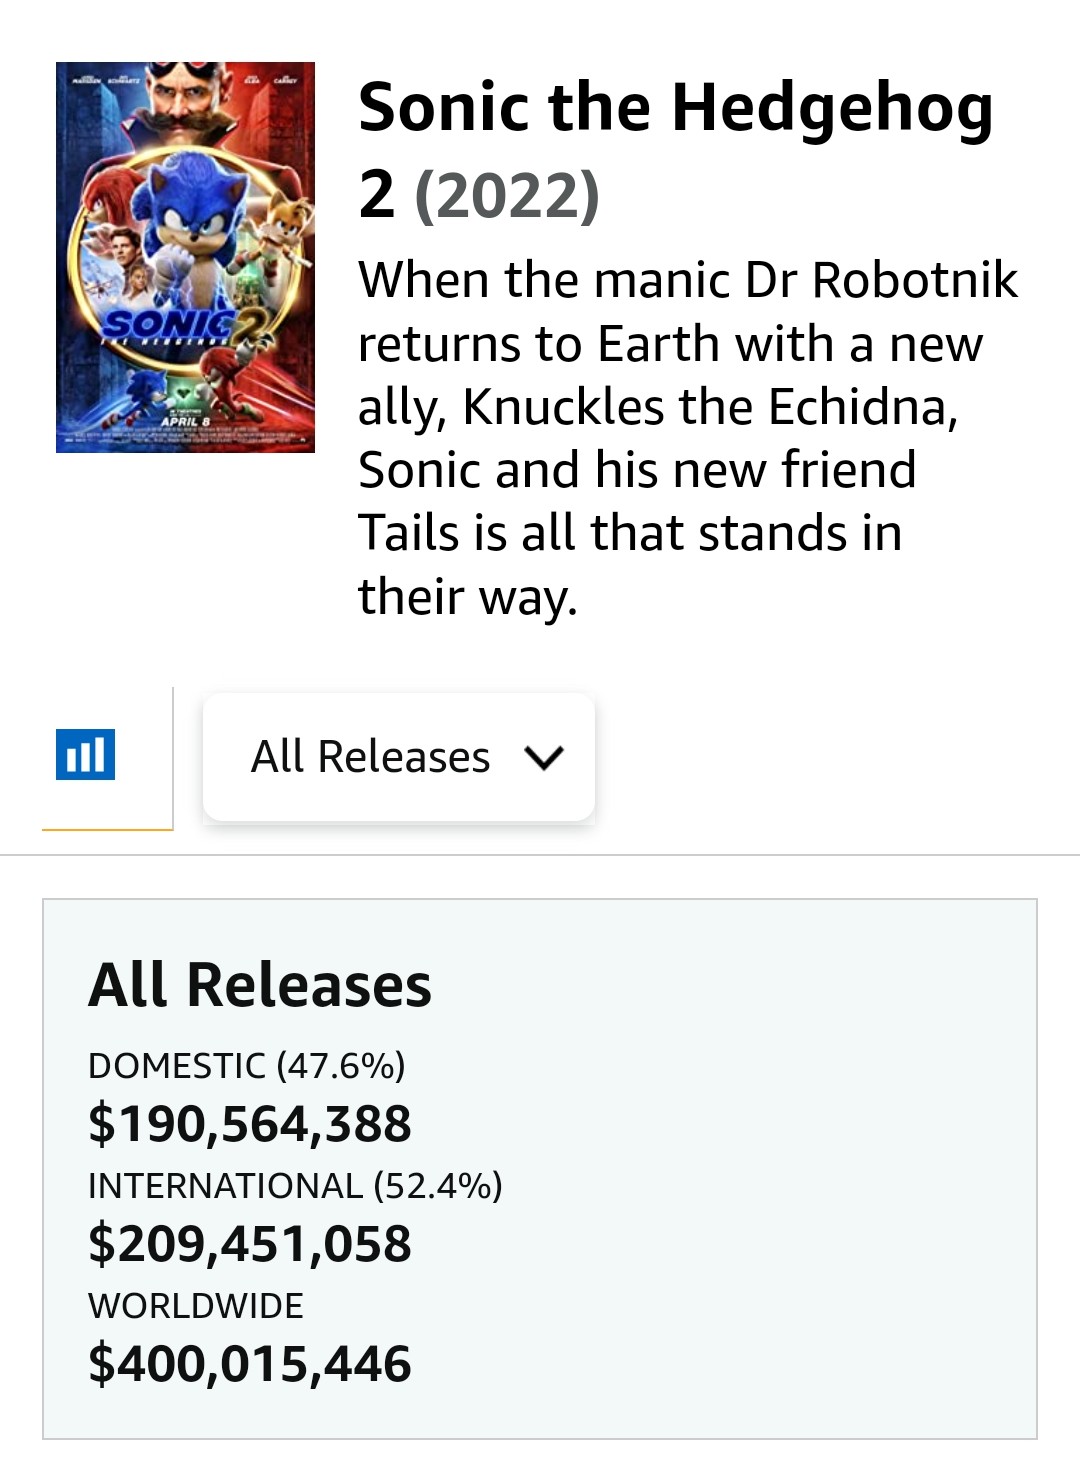 《音速小子2》電影票房突破4億美元